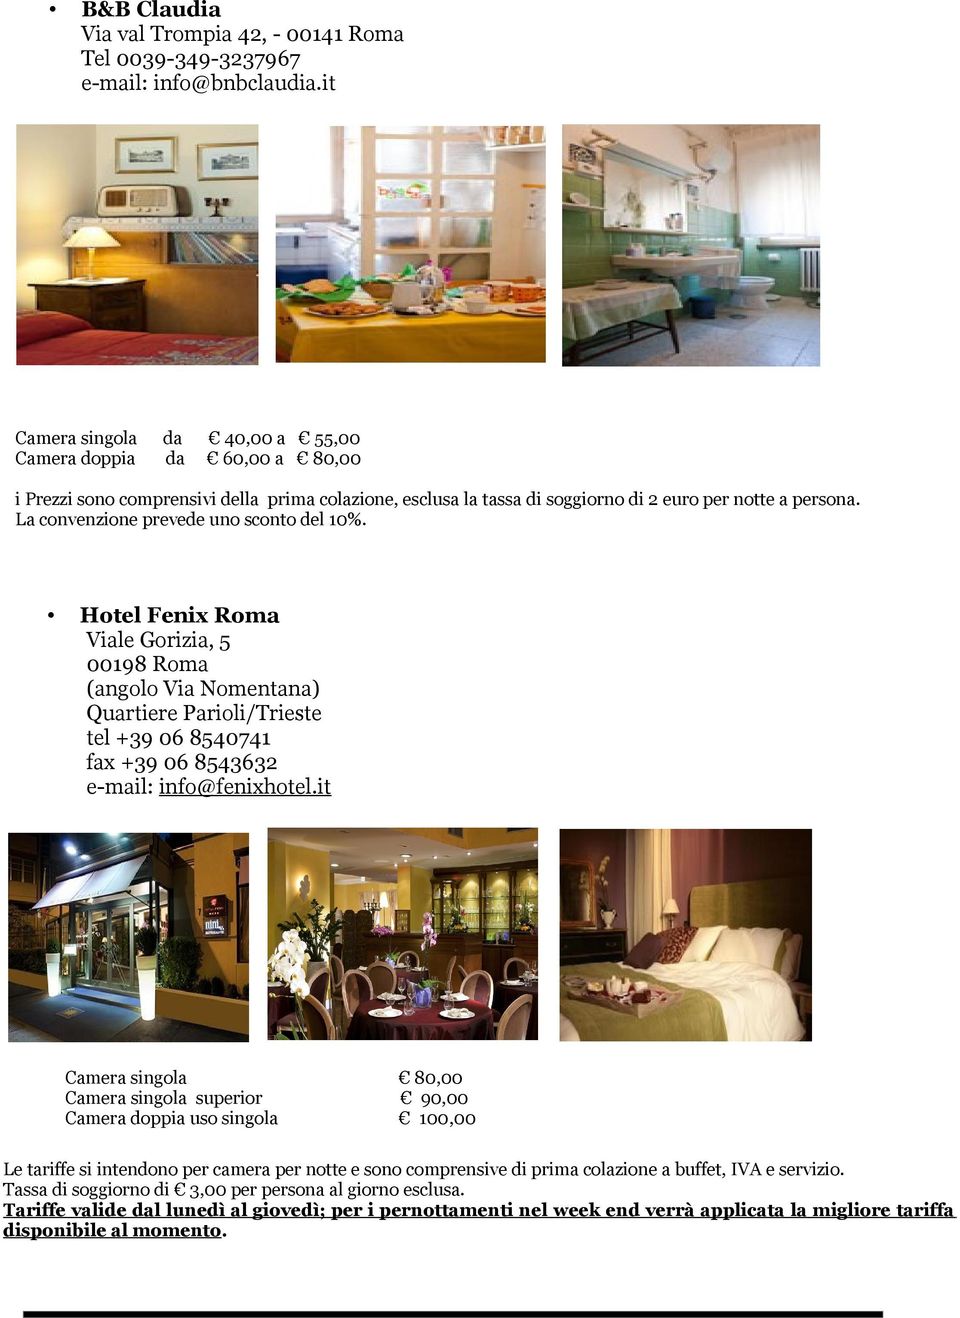 La convenzione prevede uno sconto del 10%. Hotel Fenix Roma Viale Gorizia, 5 00198 Roma (angolo Via Nomentana) Quartiere Parioli/Trieste tel +39 06 8540741 fax +39 06 8543632 e-mail: info@fenixhotel.